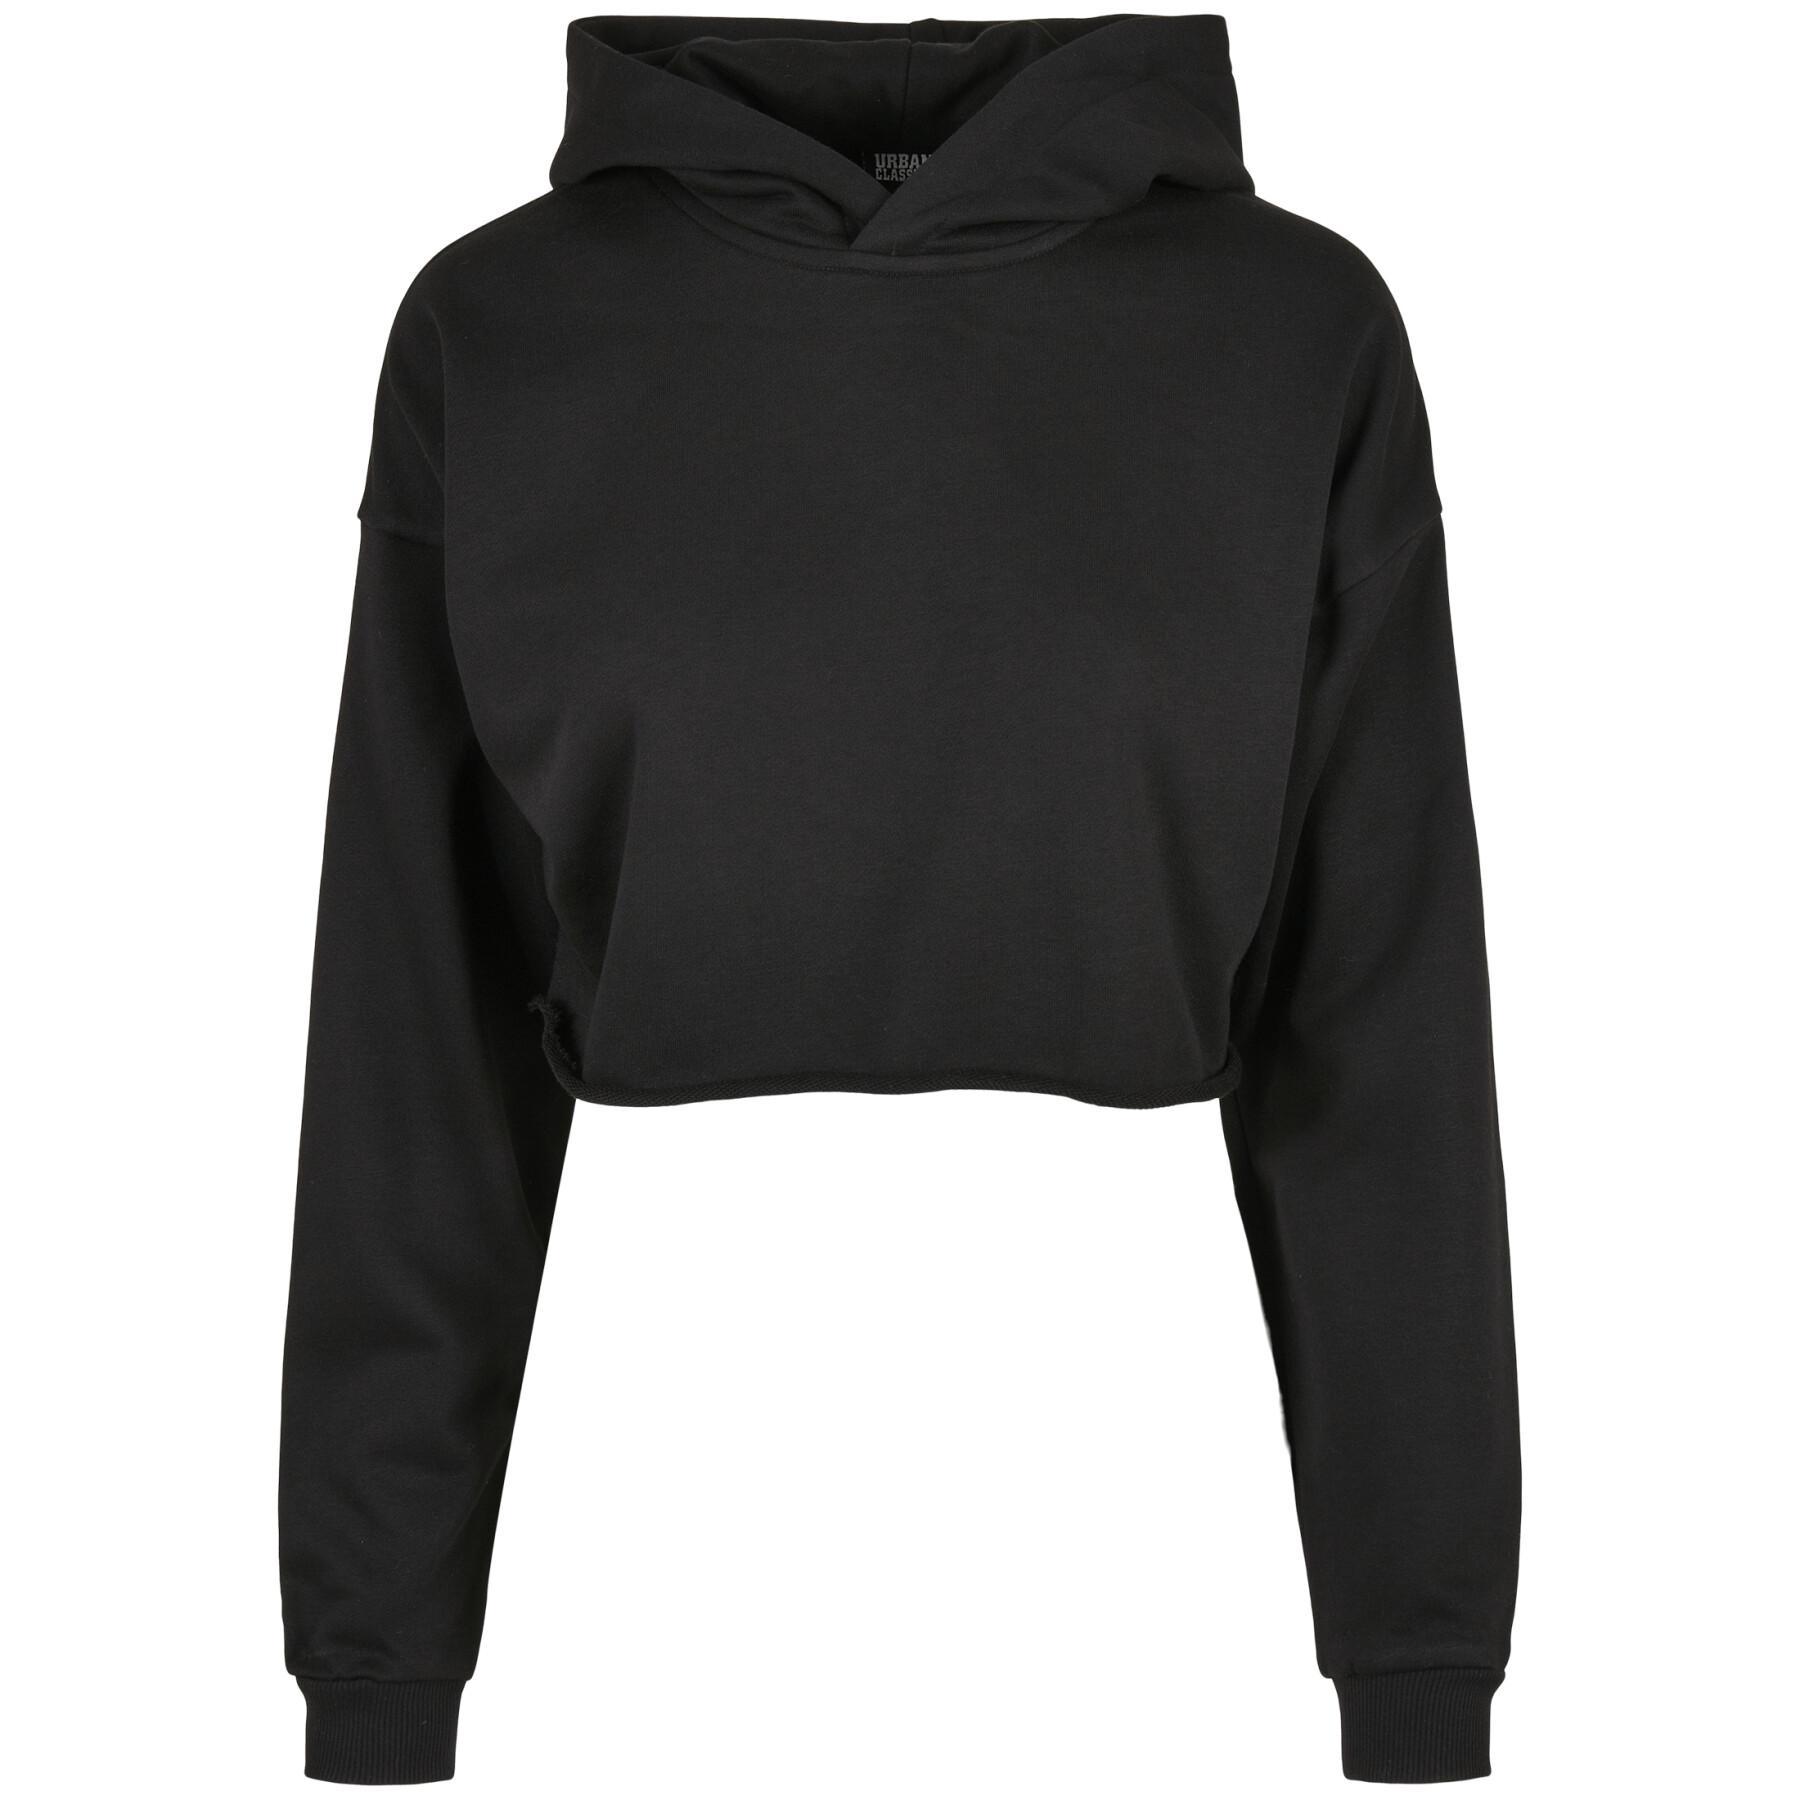 Sweatshirt oversize hoodie for women Urban Classics